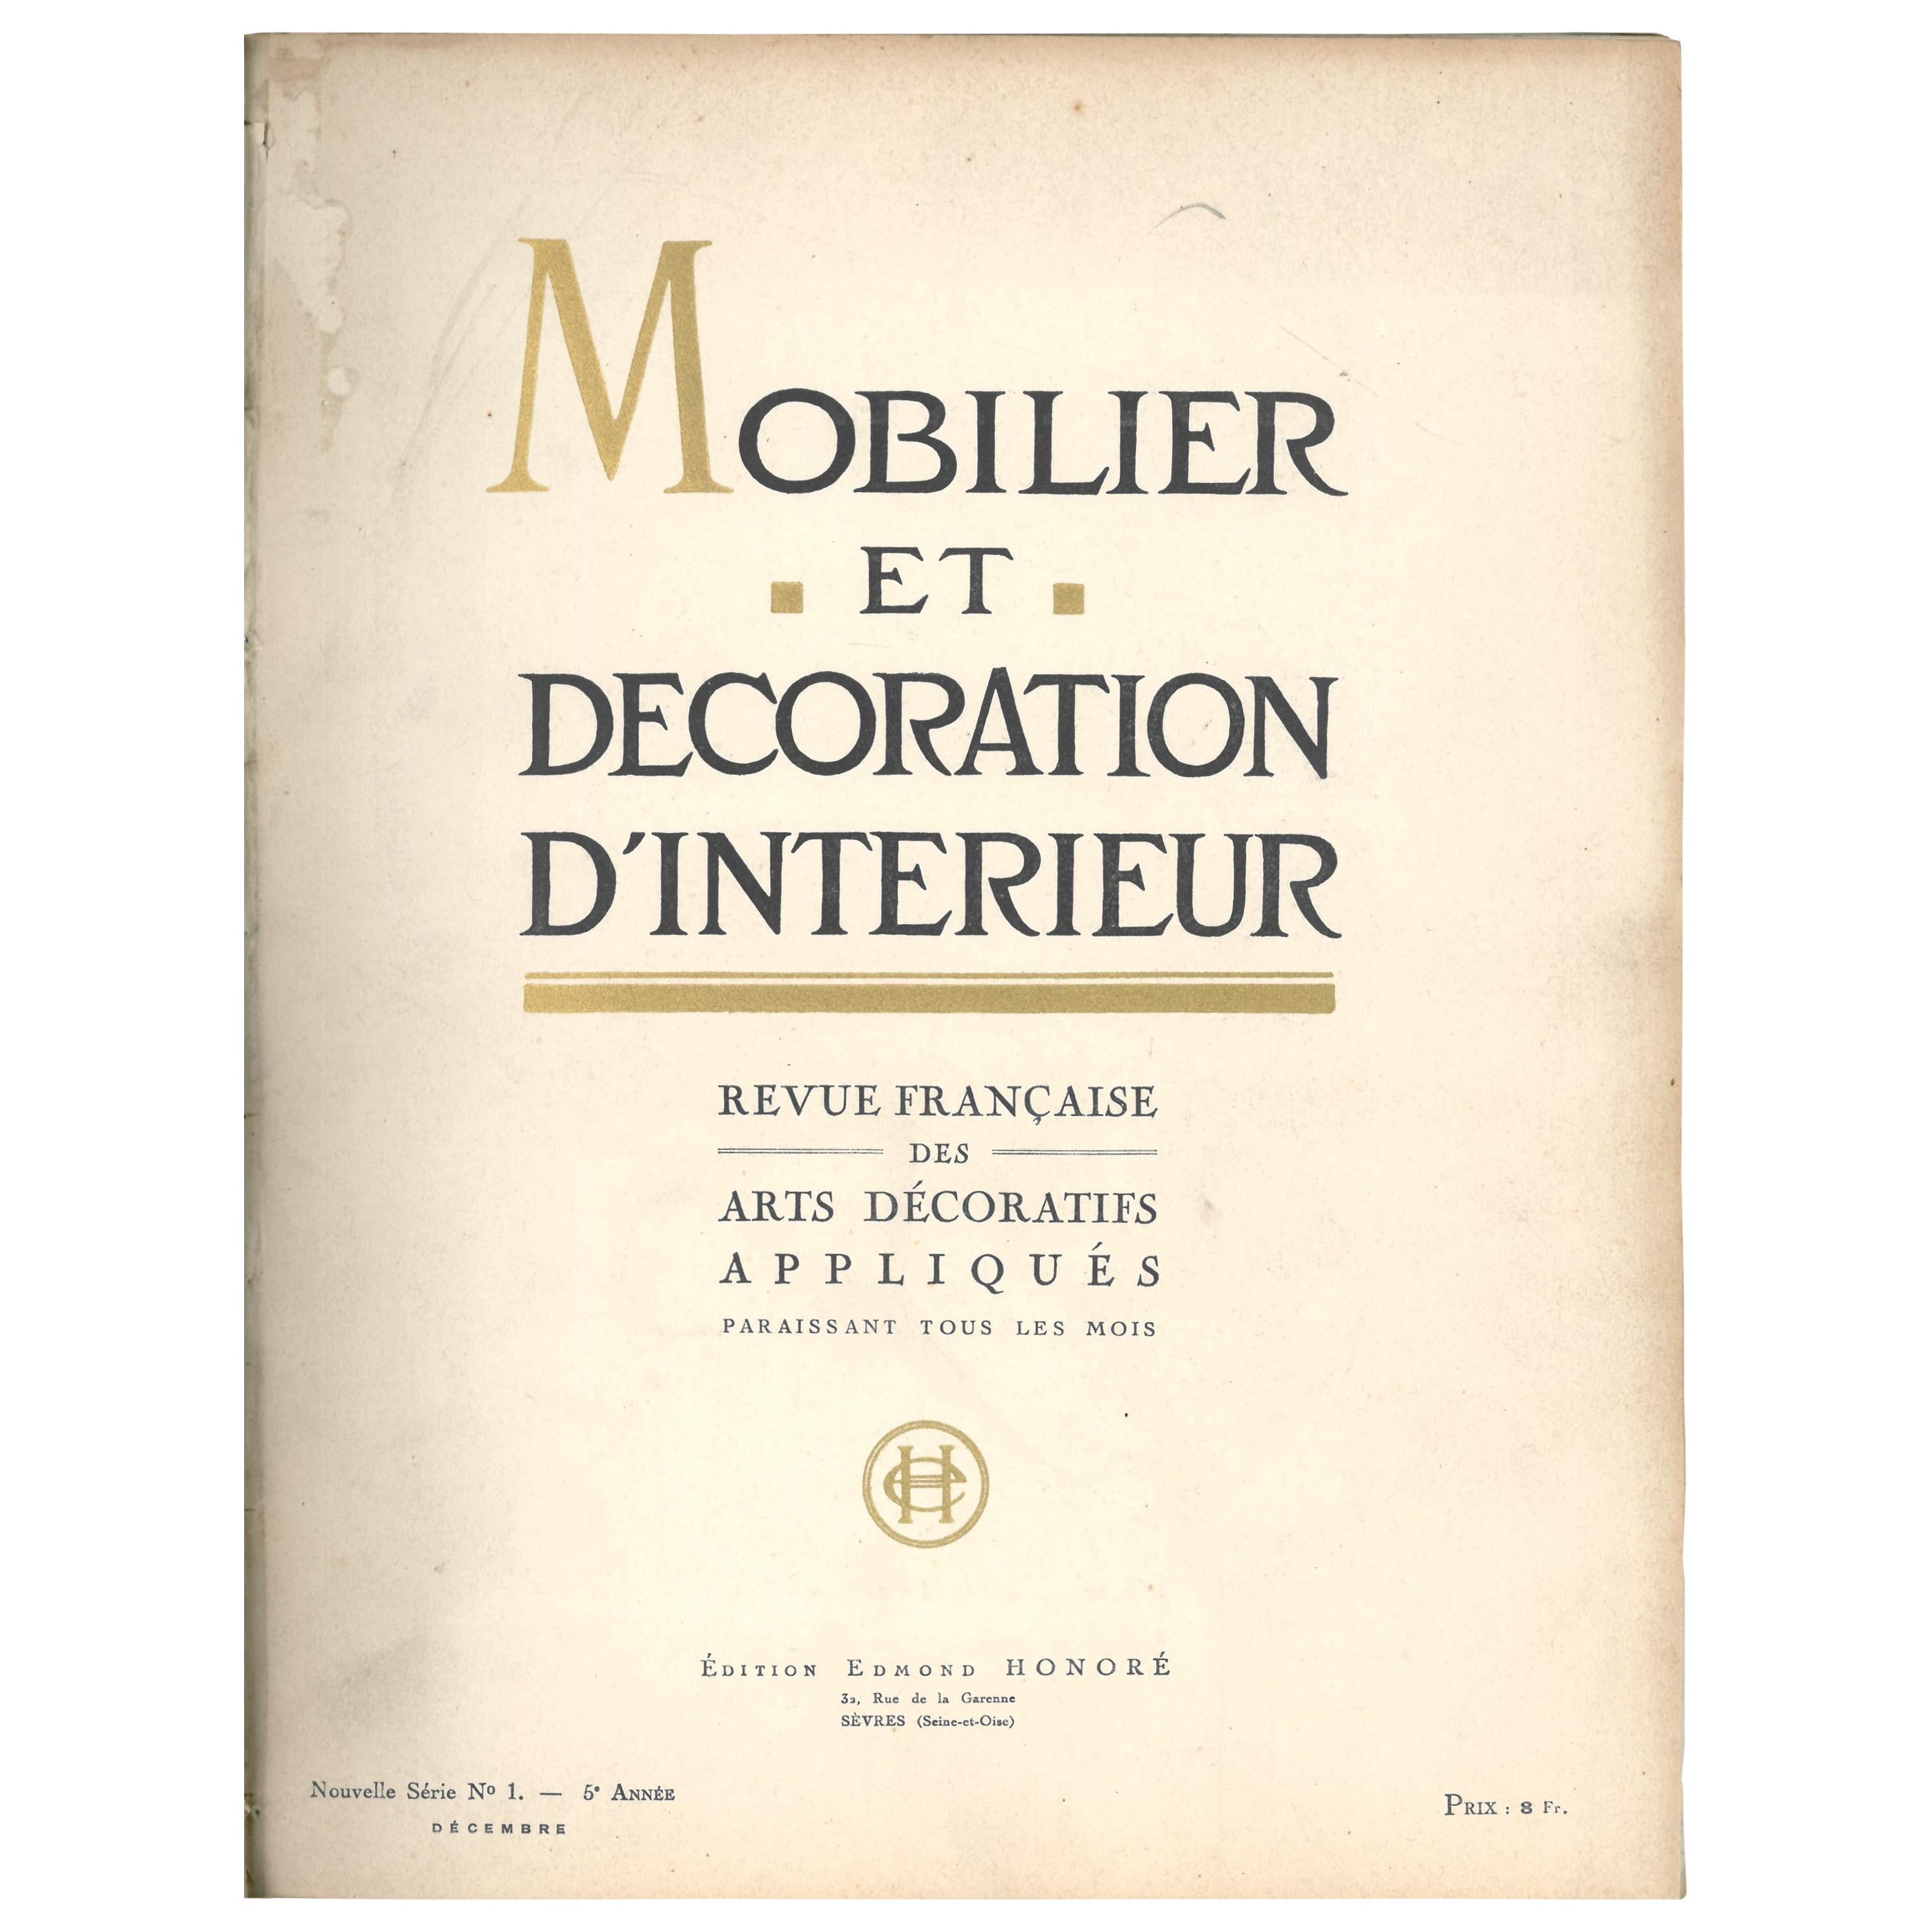 Mobilier et décoration d'interieur (livre)